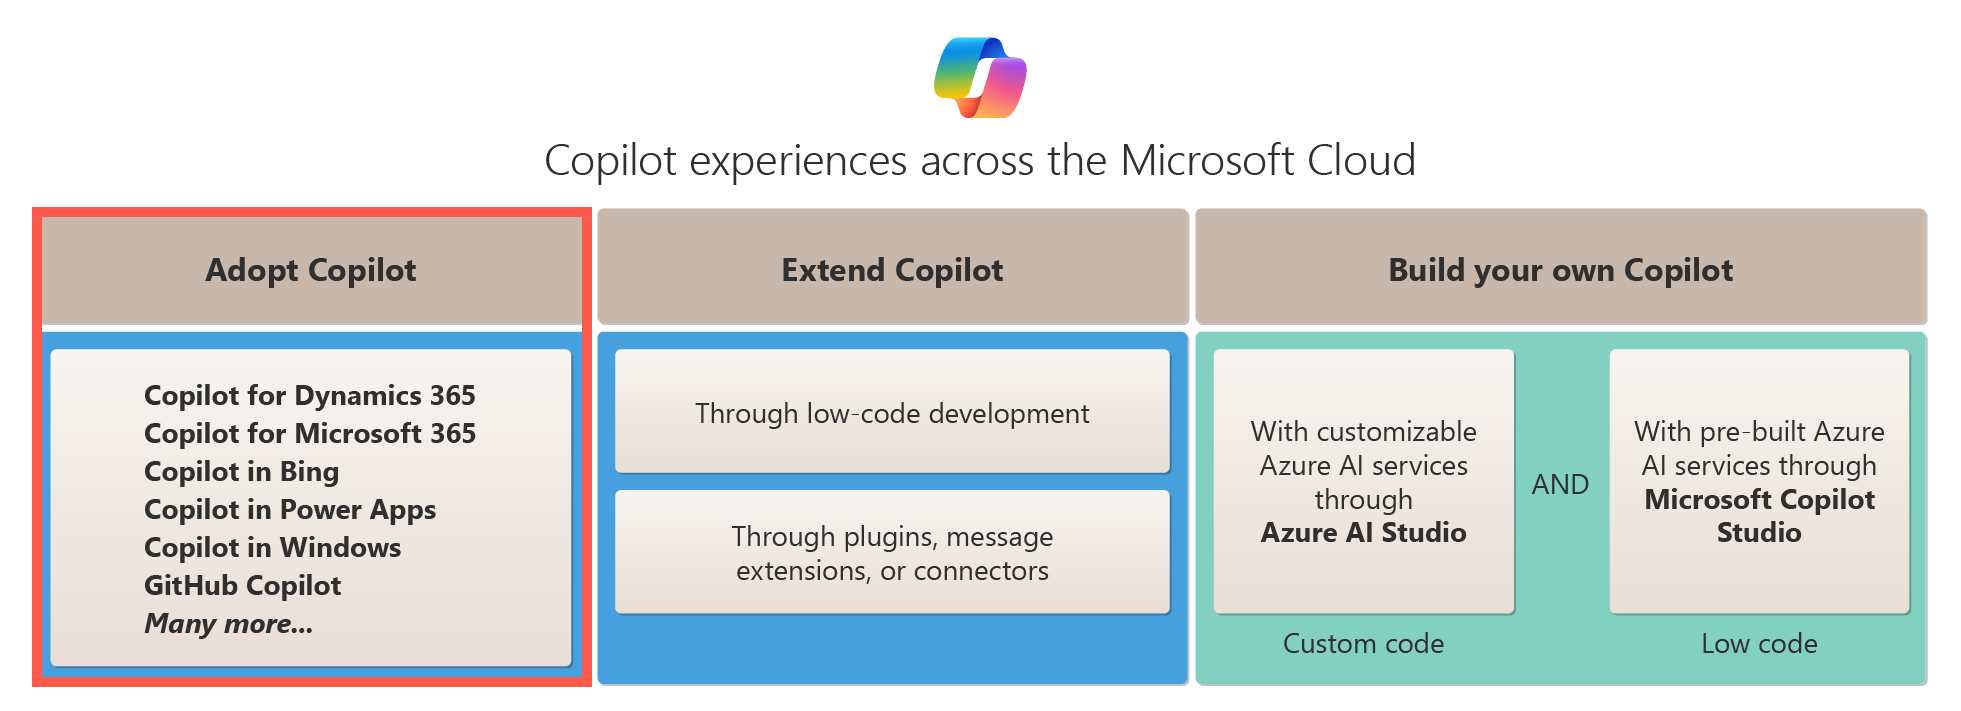 Diagramme montrant les options d’adoption d’un Copilot dans le cloud Microsoft.